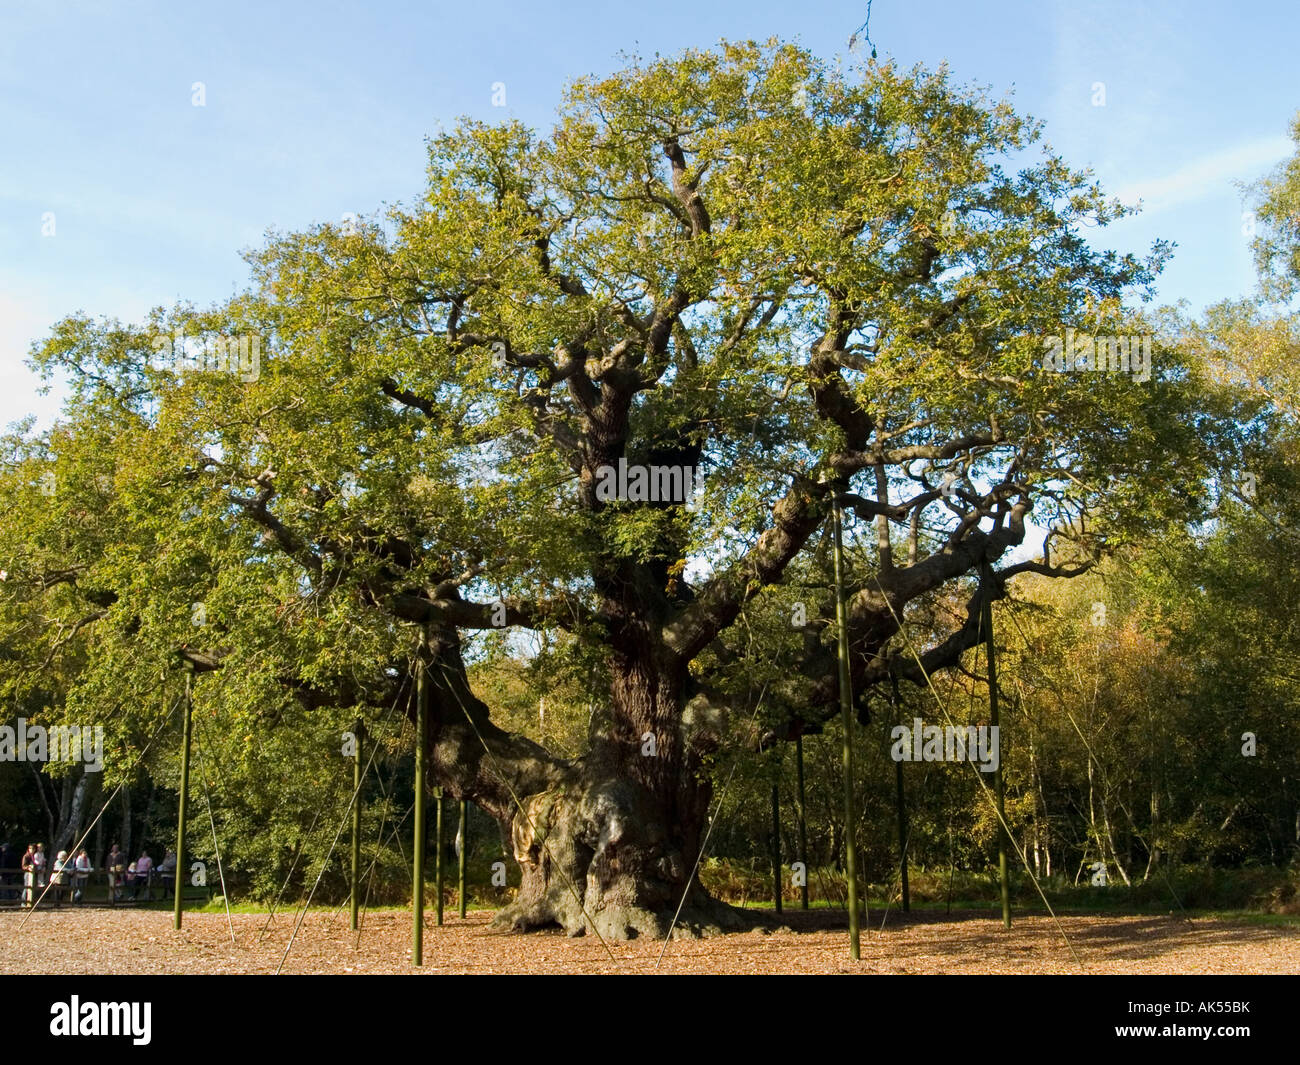 A view of the Major Oak in Sherwood Forest, near Edwinstowe in Nottinghamshire UK Stock Photo